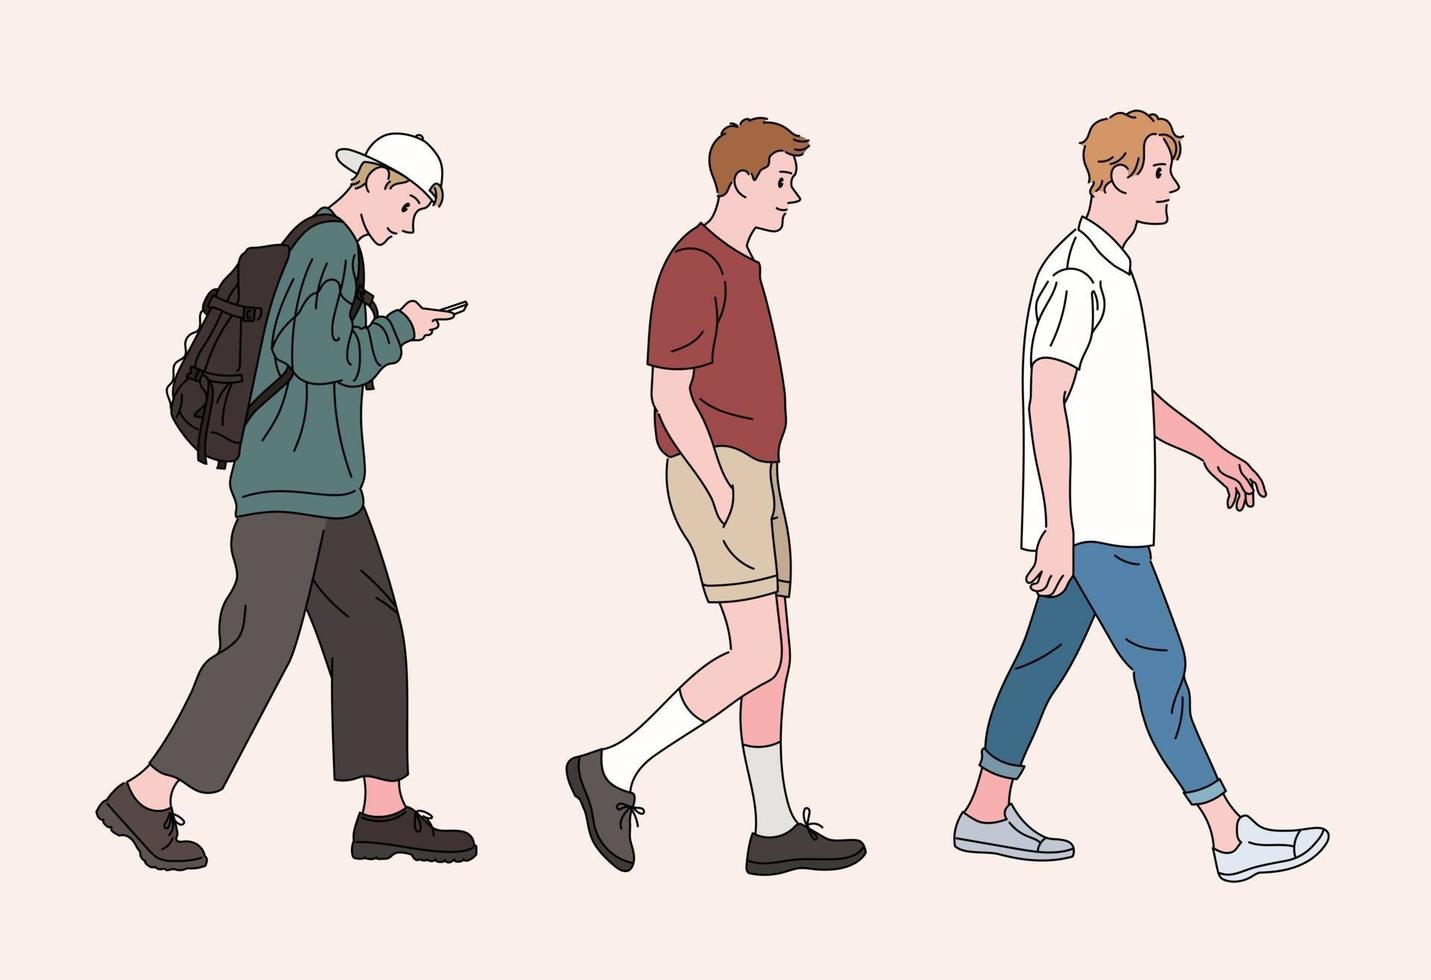 los hombres de estilo casual están caminando. ilustraciones de diseño de vectores de estilo dibujado a mano.